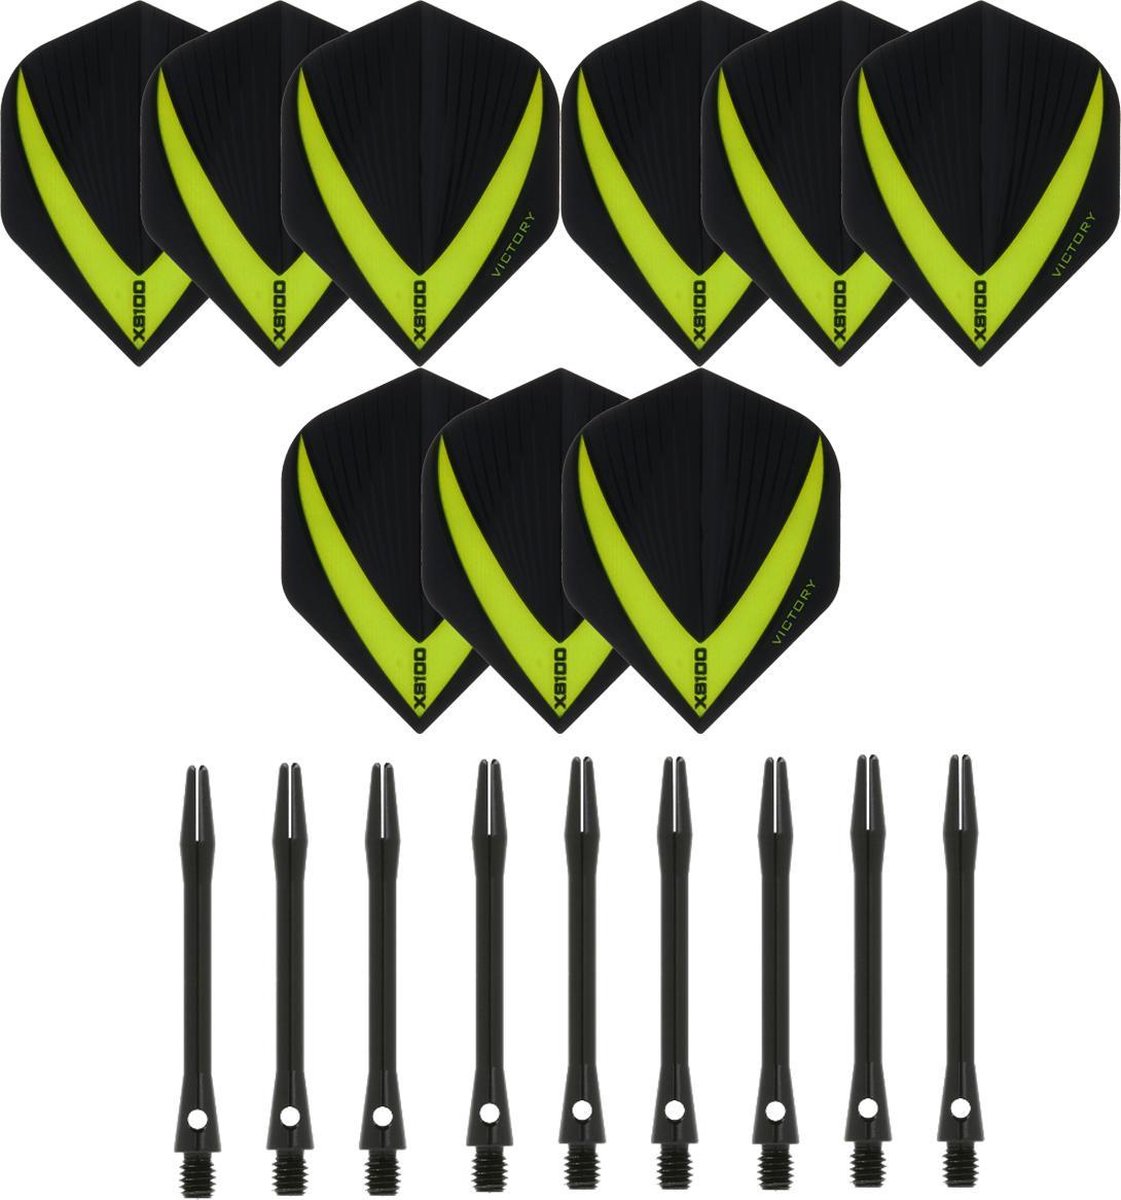 3 sets (9 stuks) Super Sterke - Groen - Vista-X - darts flights - inclusief 3 sets (9 stuks) - medium - Aluminium - zwart - darts shafts